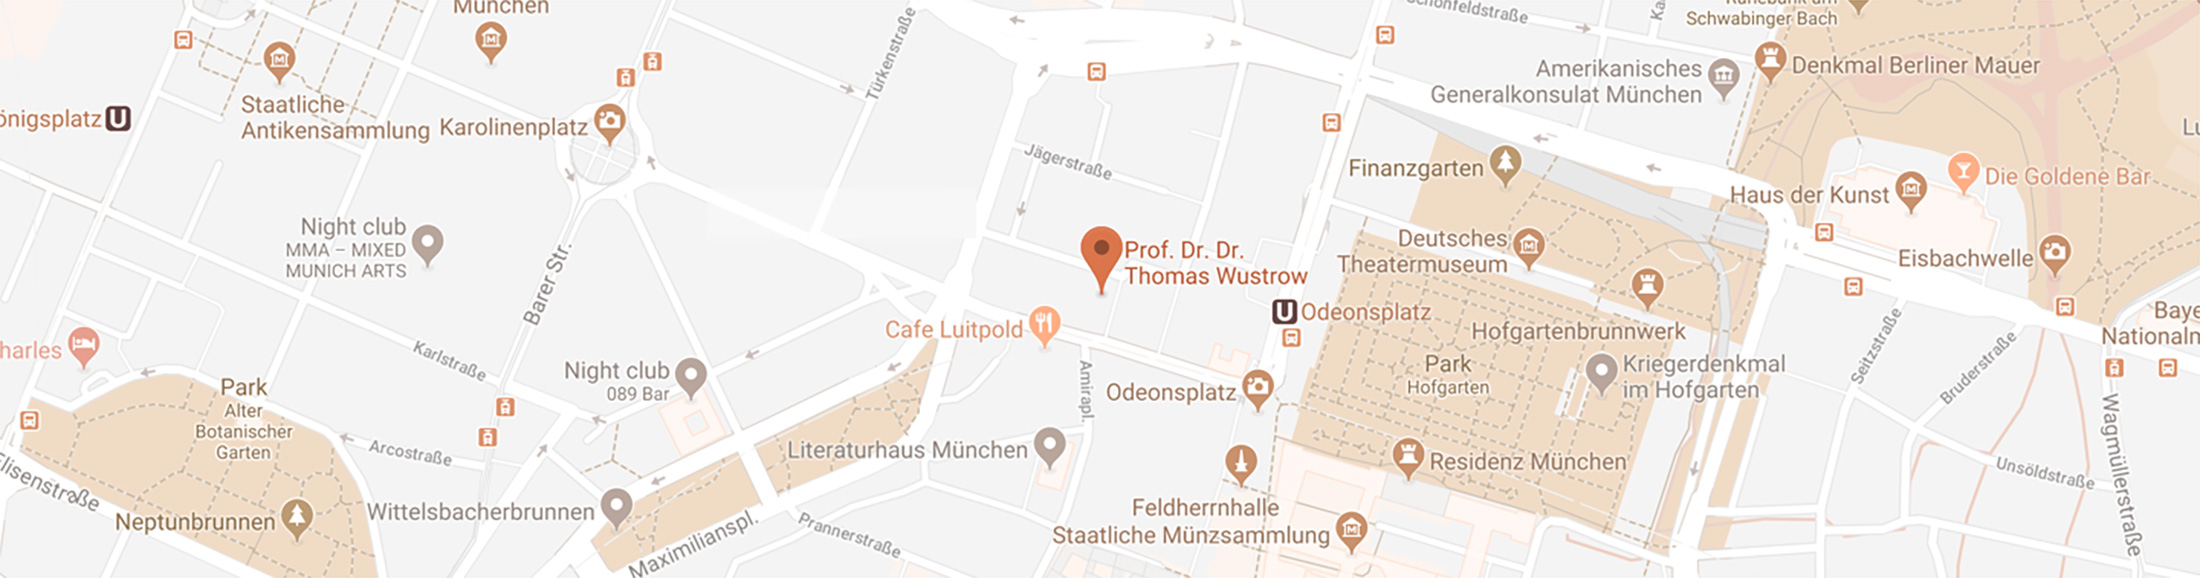 Map View - Allergologie München